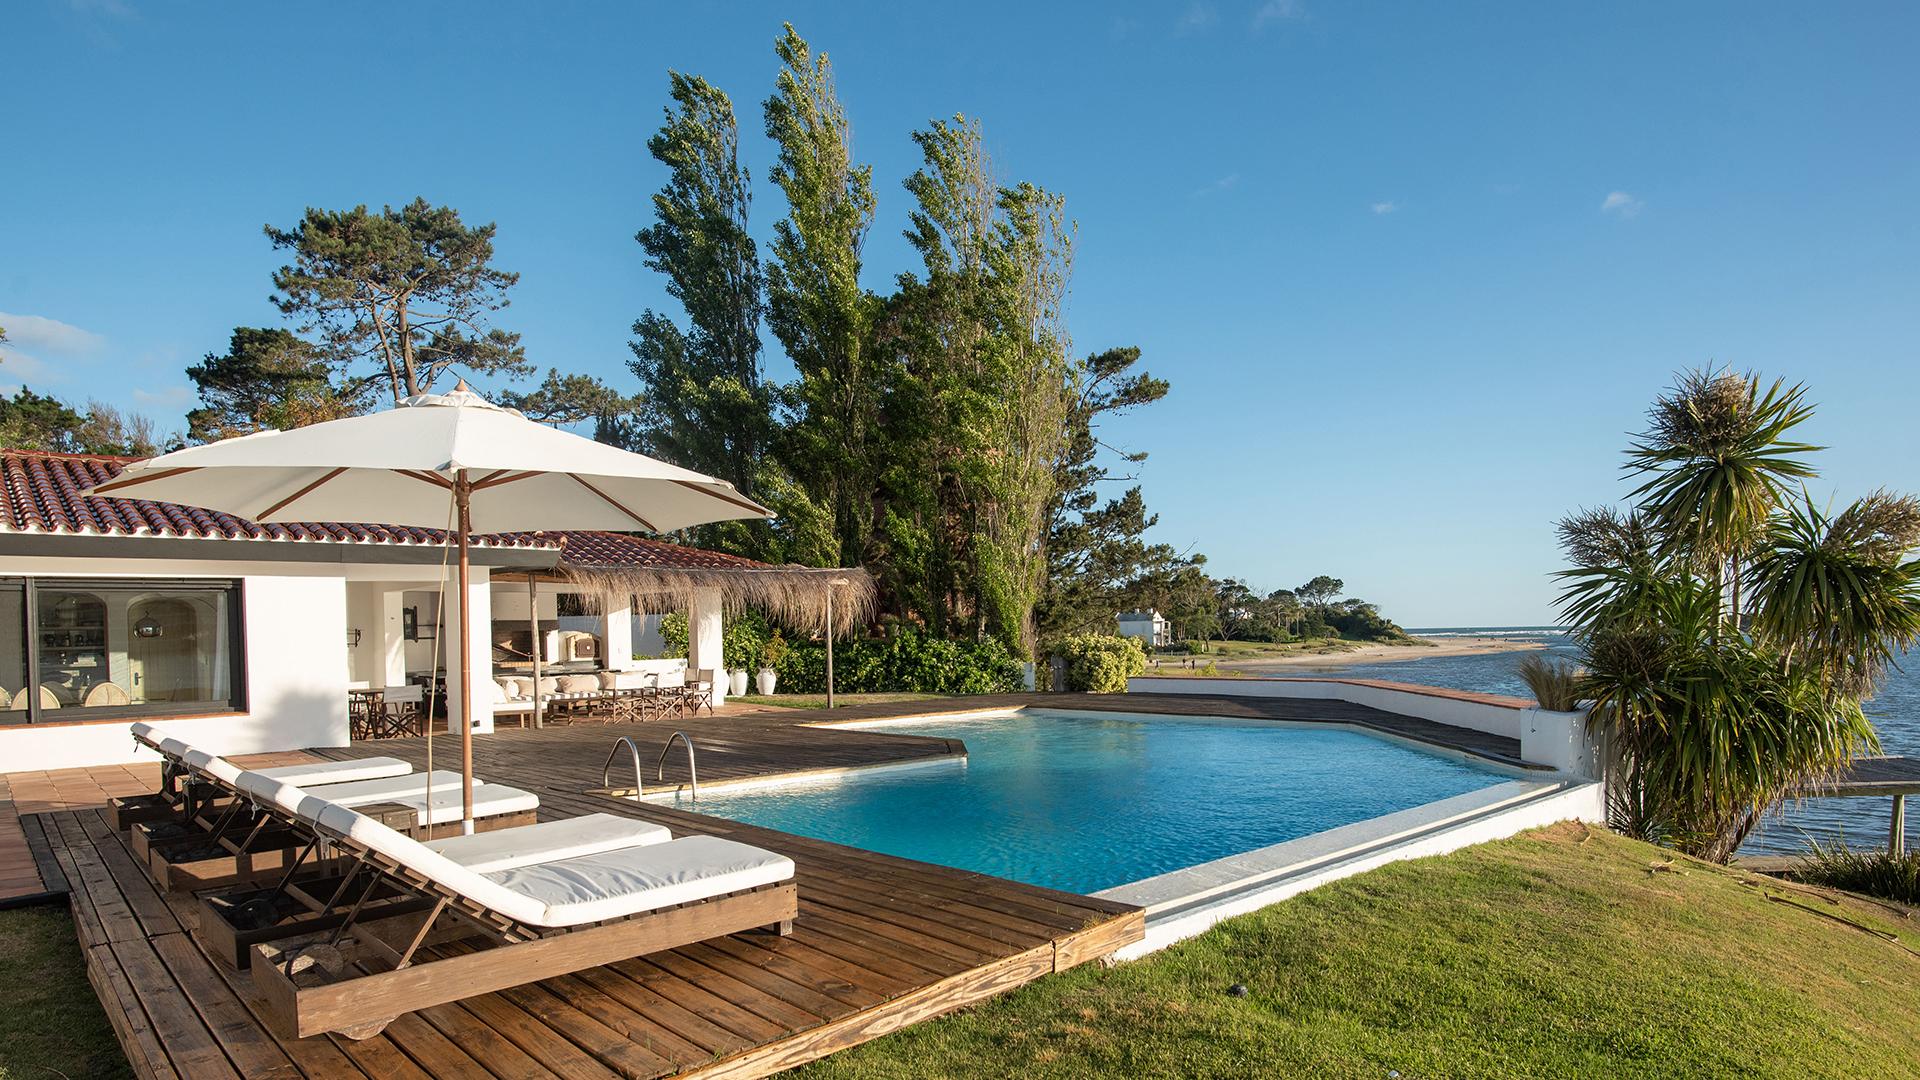 Mediterranean Waterfront Villa located in La Barra, Punta del Este, Uruguay, listed by Curiocity Villas.